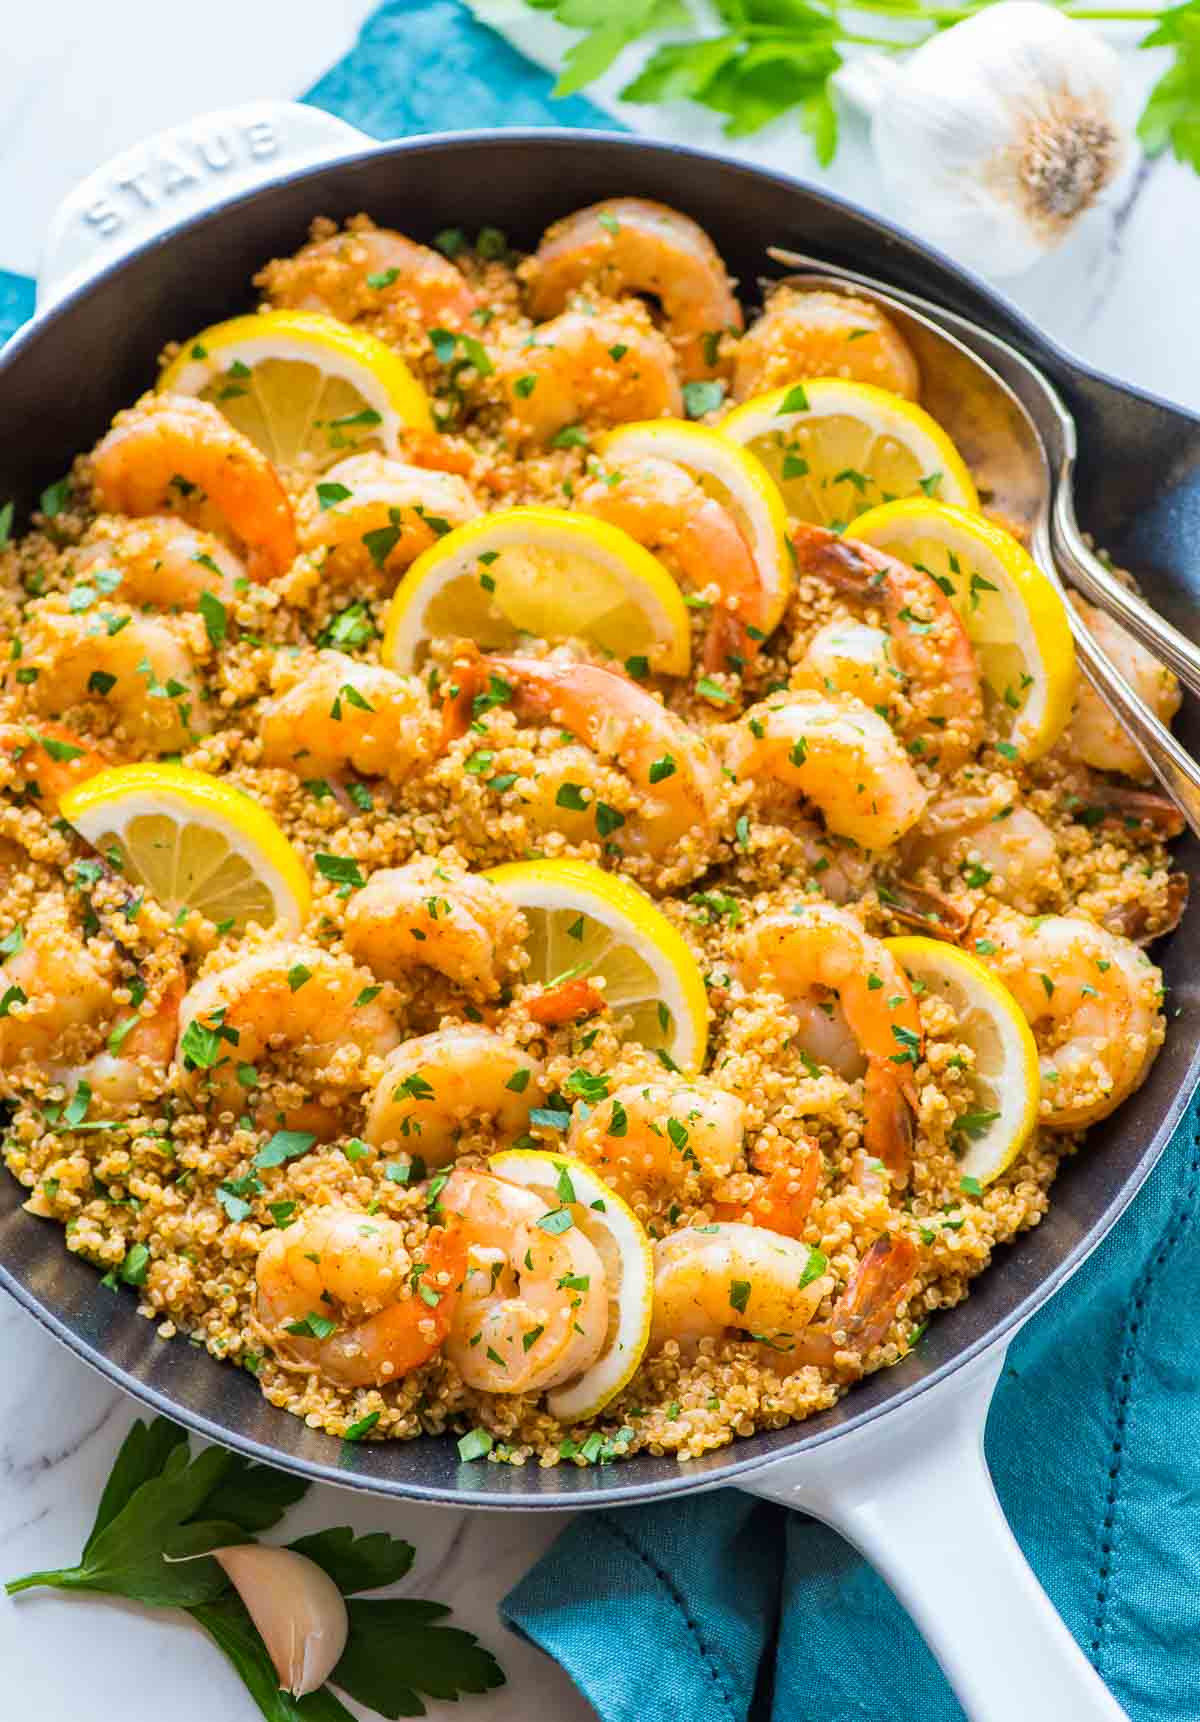 Dinner Recipe With Shrimp
 Garlic Shrimp with Quinoa